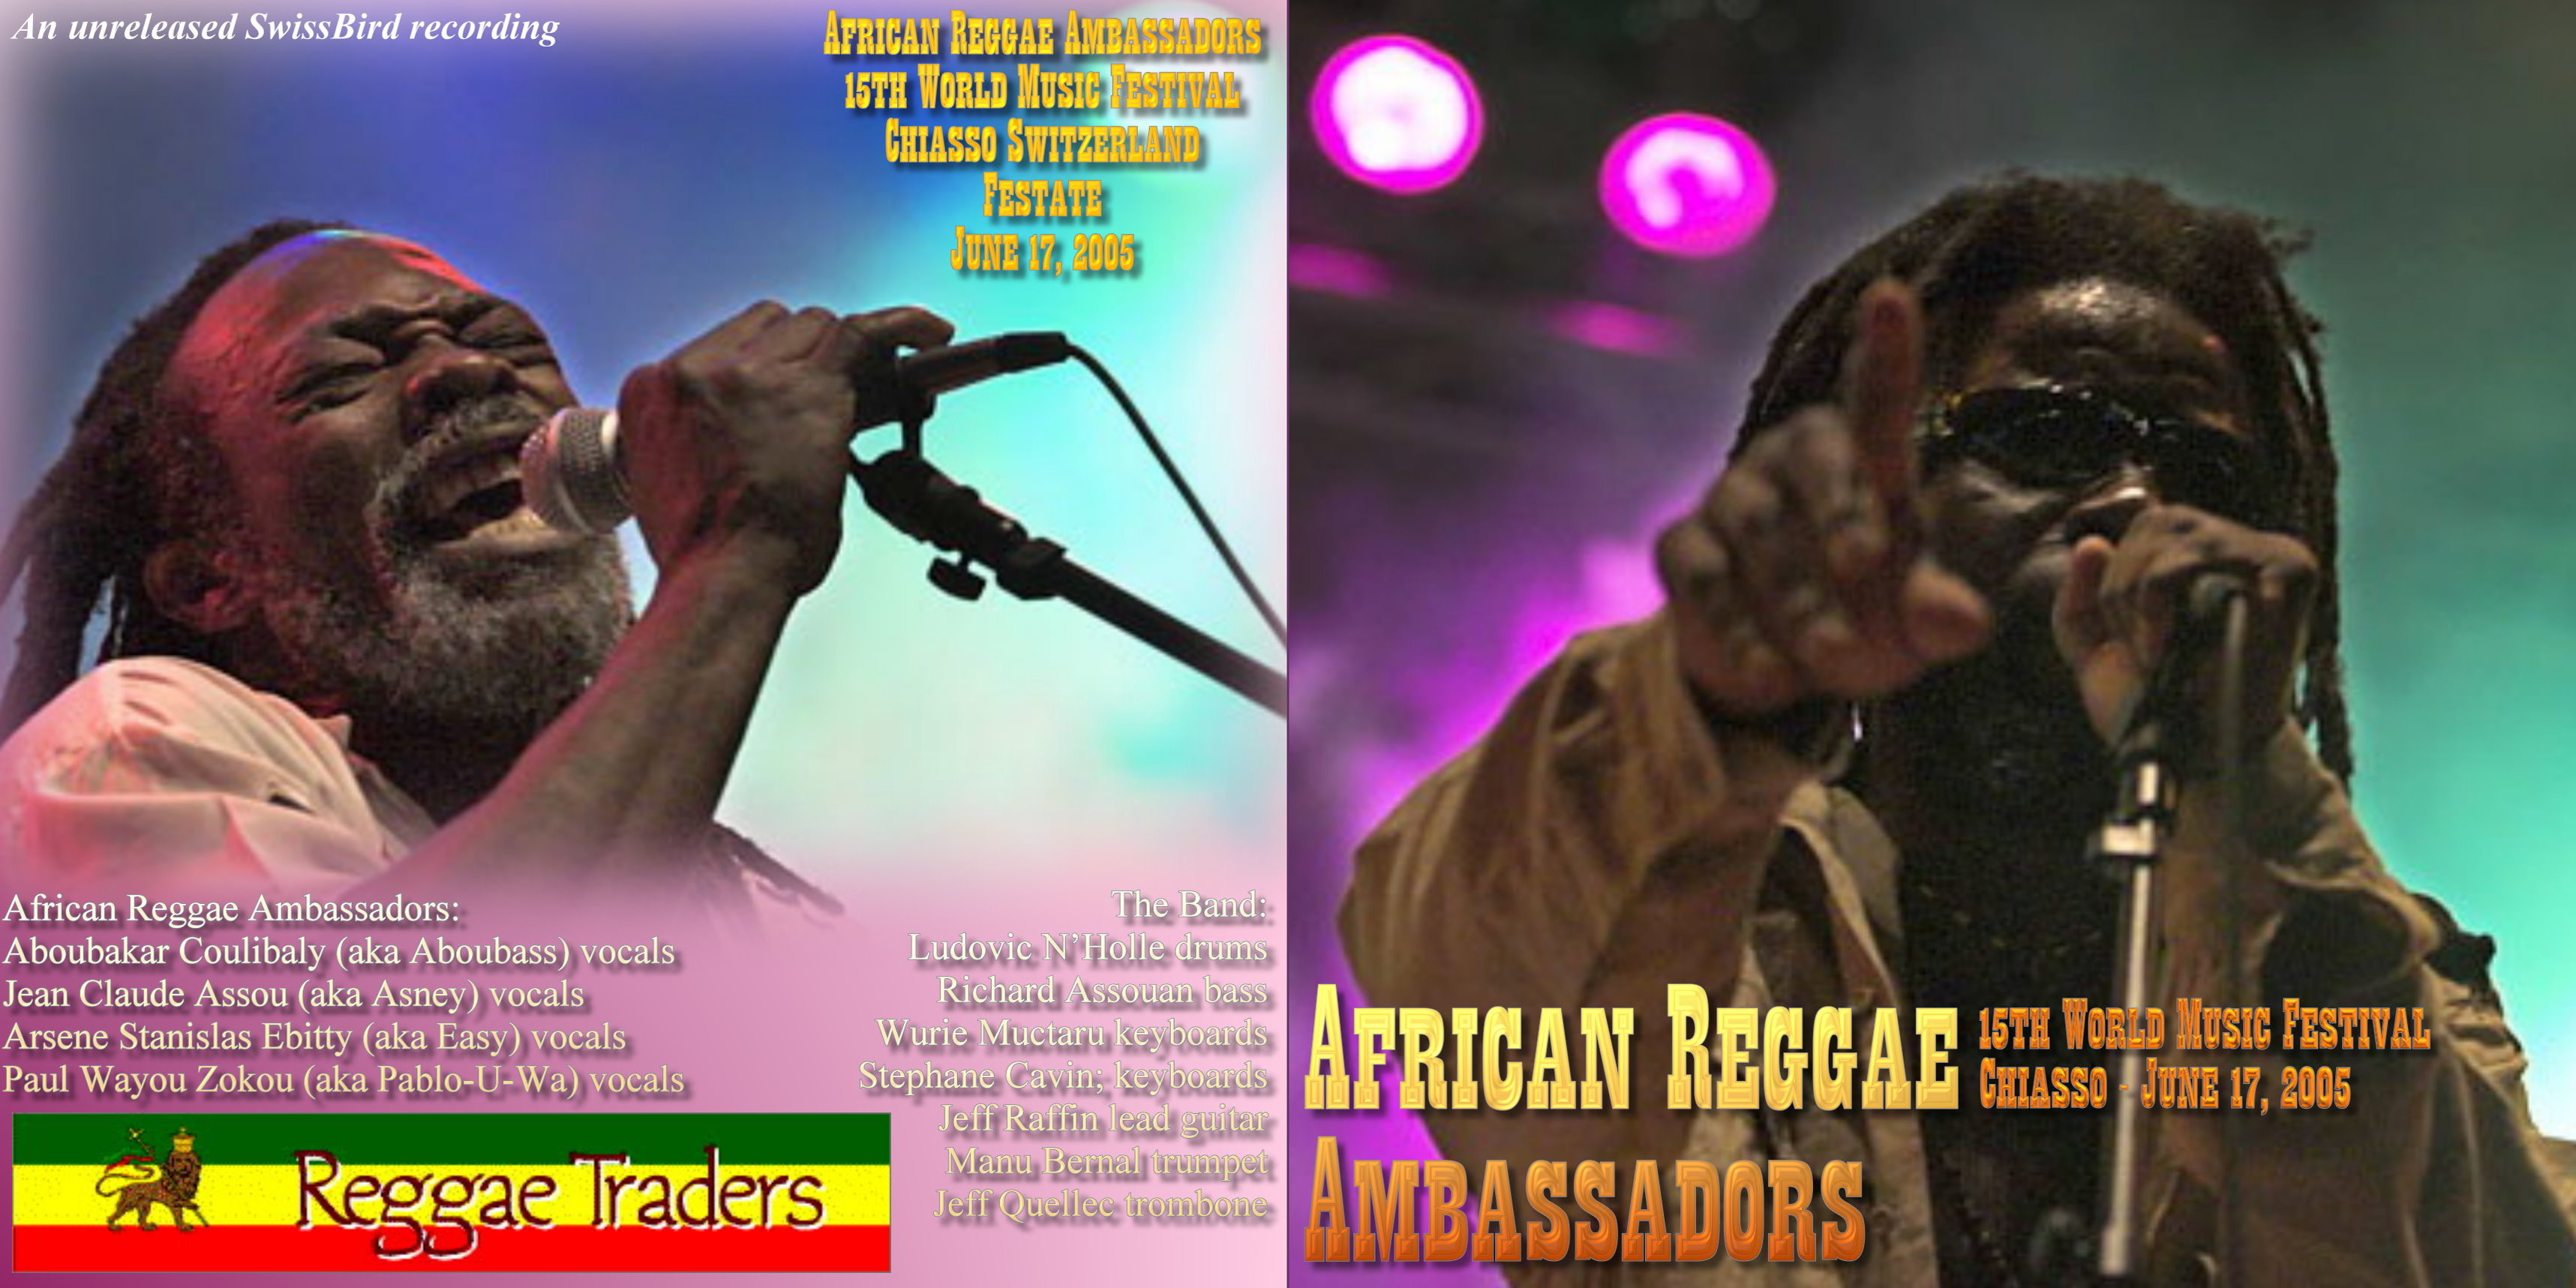 AfricanReggaeAmbassadors2005-06-17WorldMusicFestivalChiassoSwitzerland (4).jpg